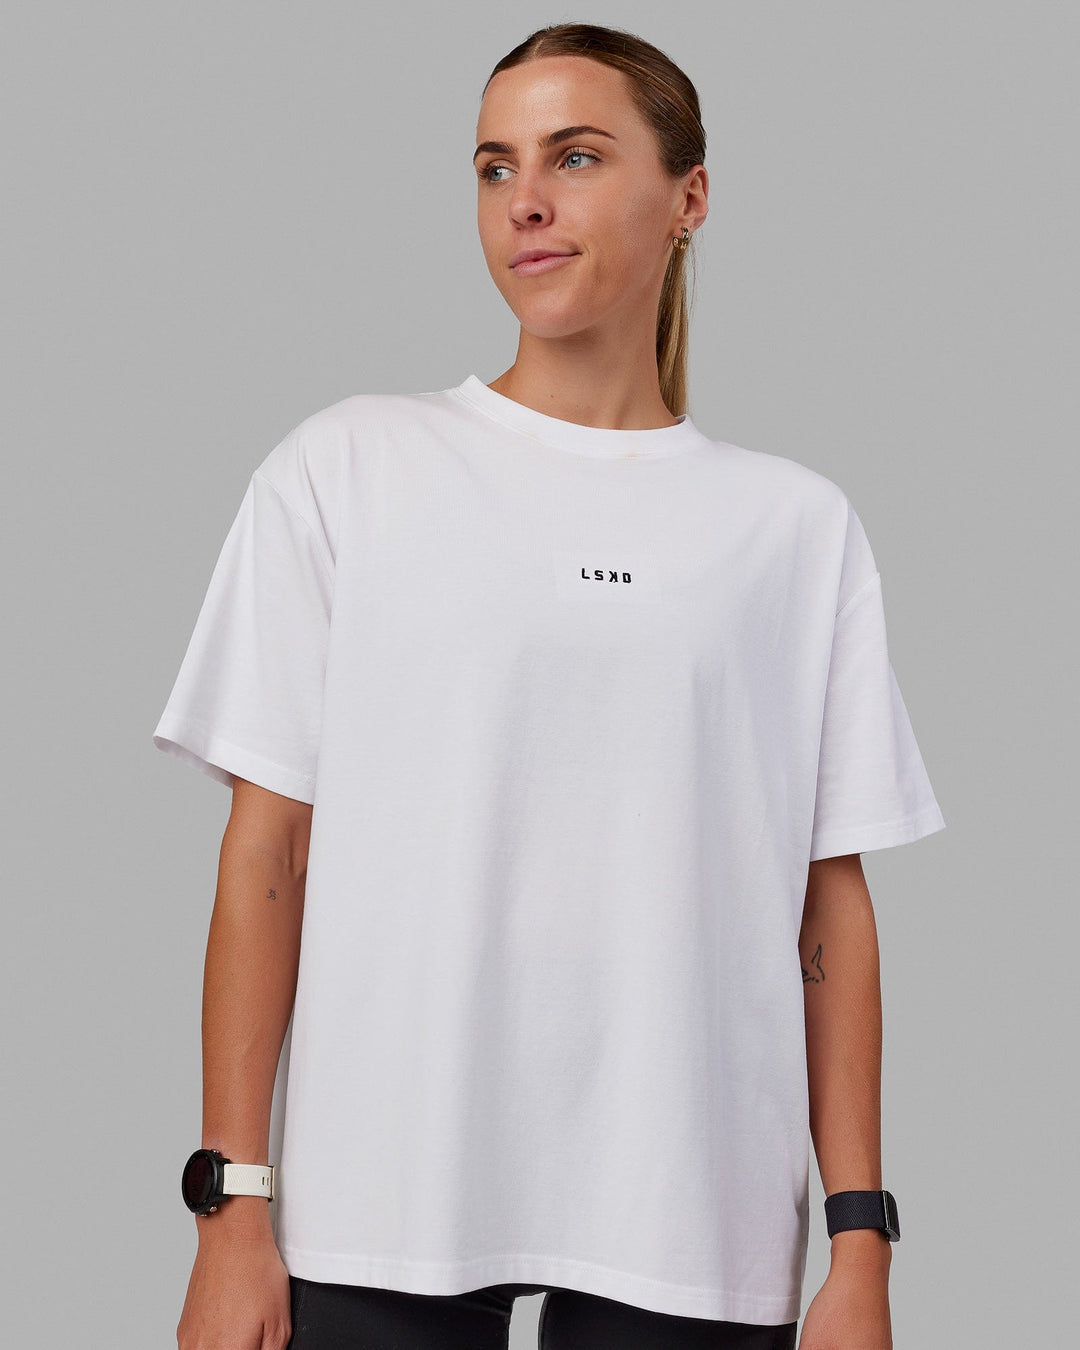 Woman wearing Go-To FLXCotton Oversized Tee - White-Black